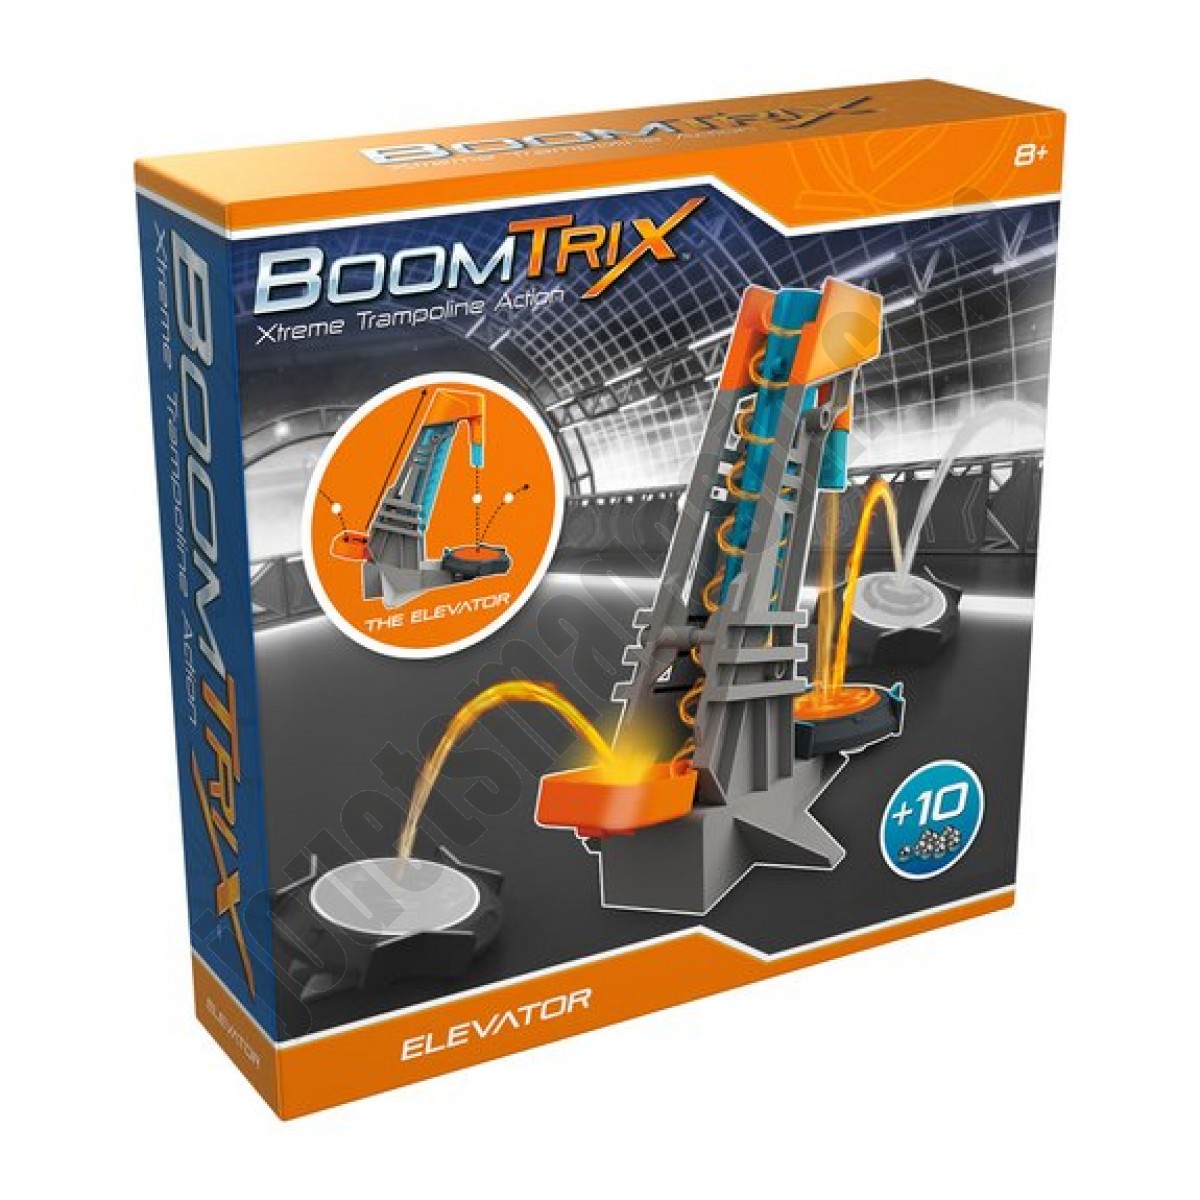 Boomtrix Elevator Extension En promotion - Boomtrix Elevator Extension En promotion